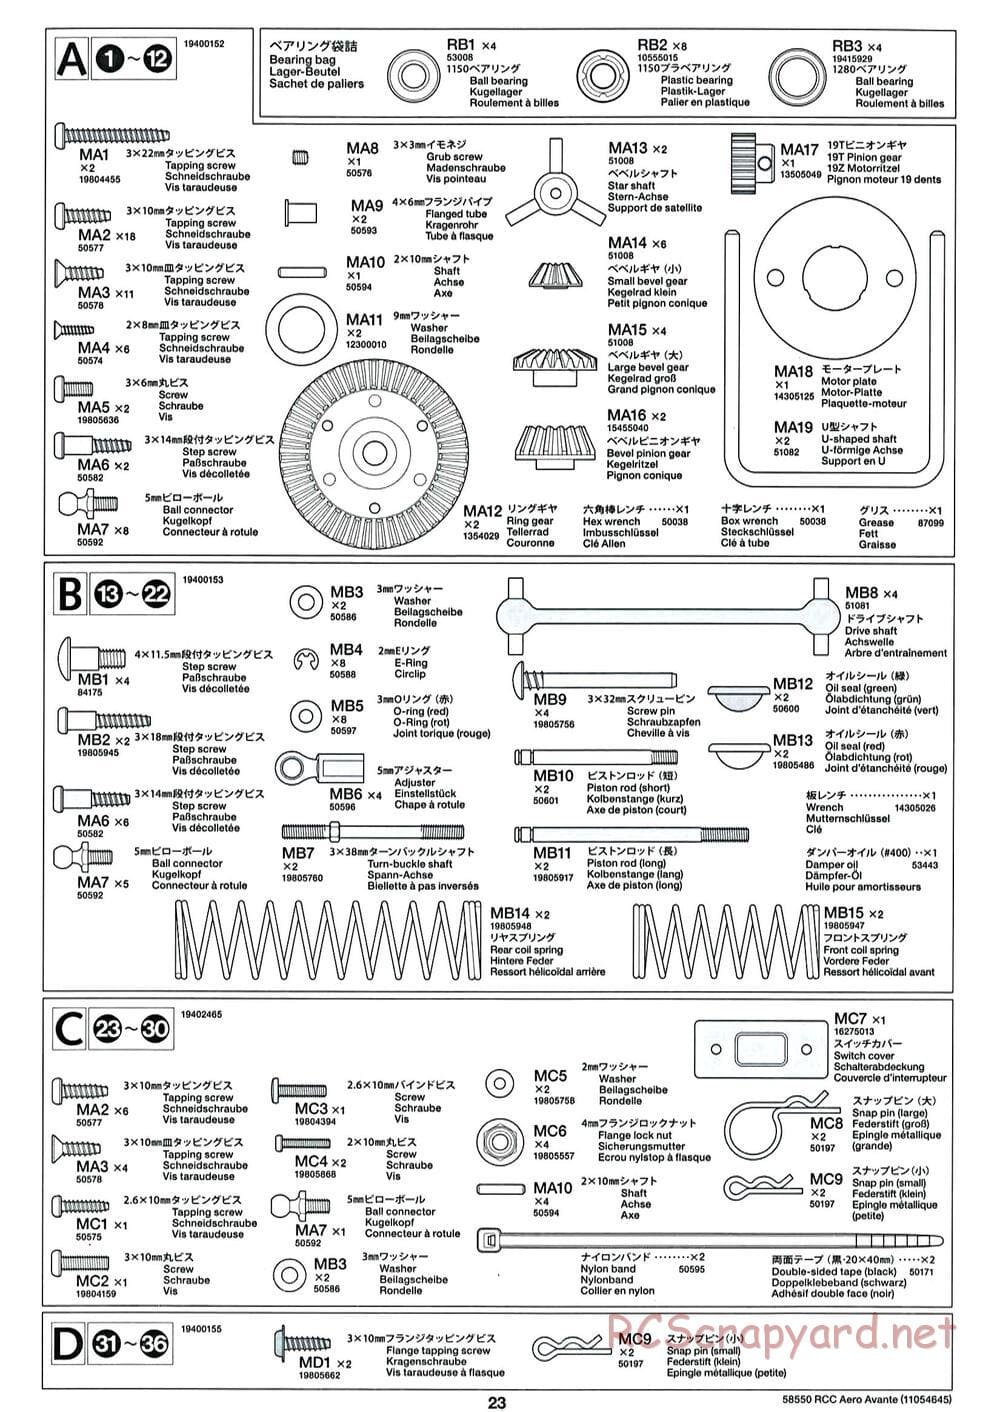 Tamiya - Aero Avante Chassis - Manual - Page 23